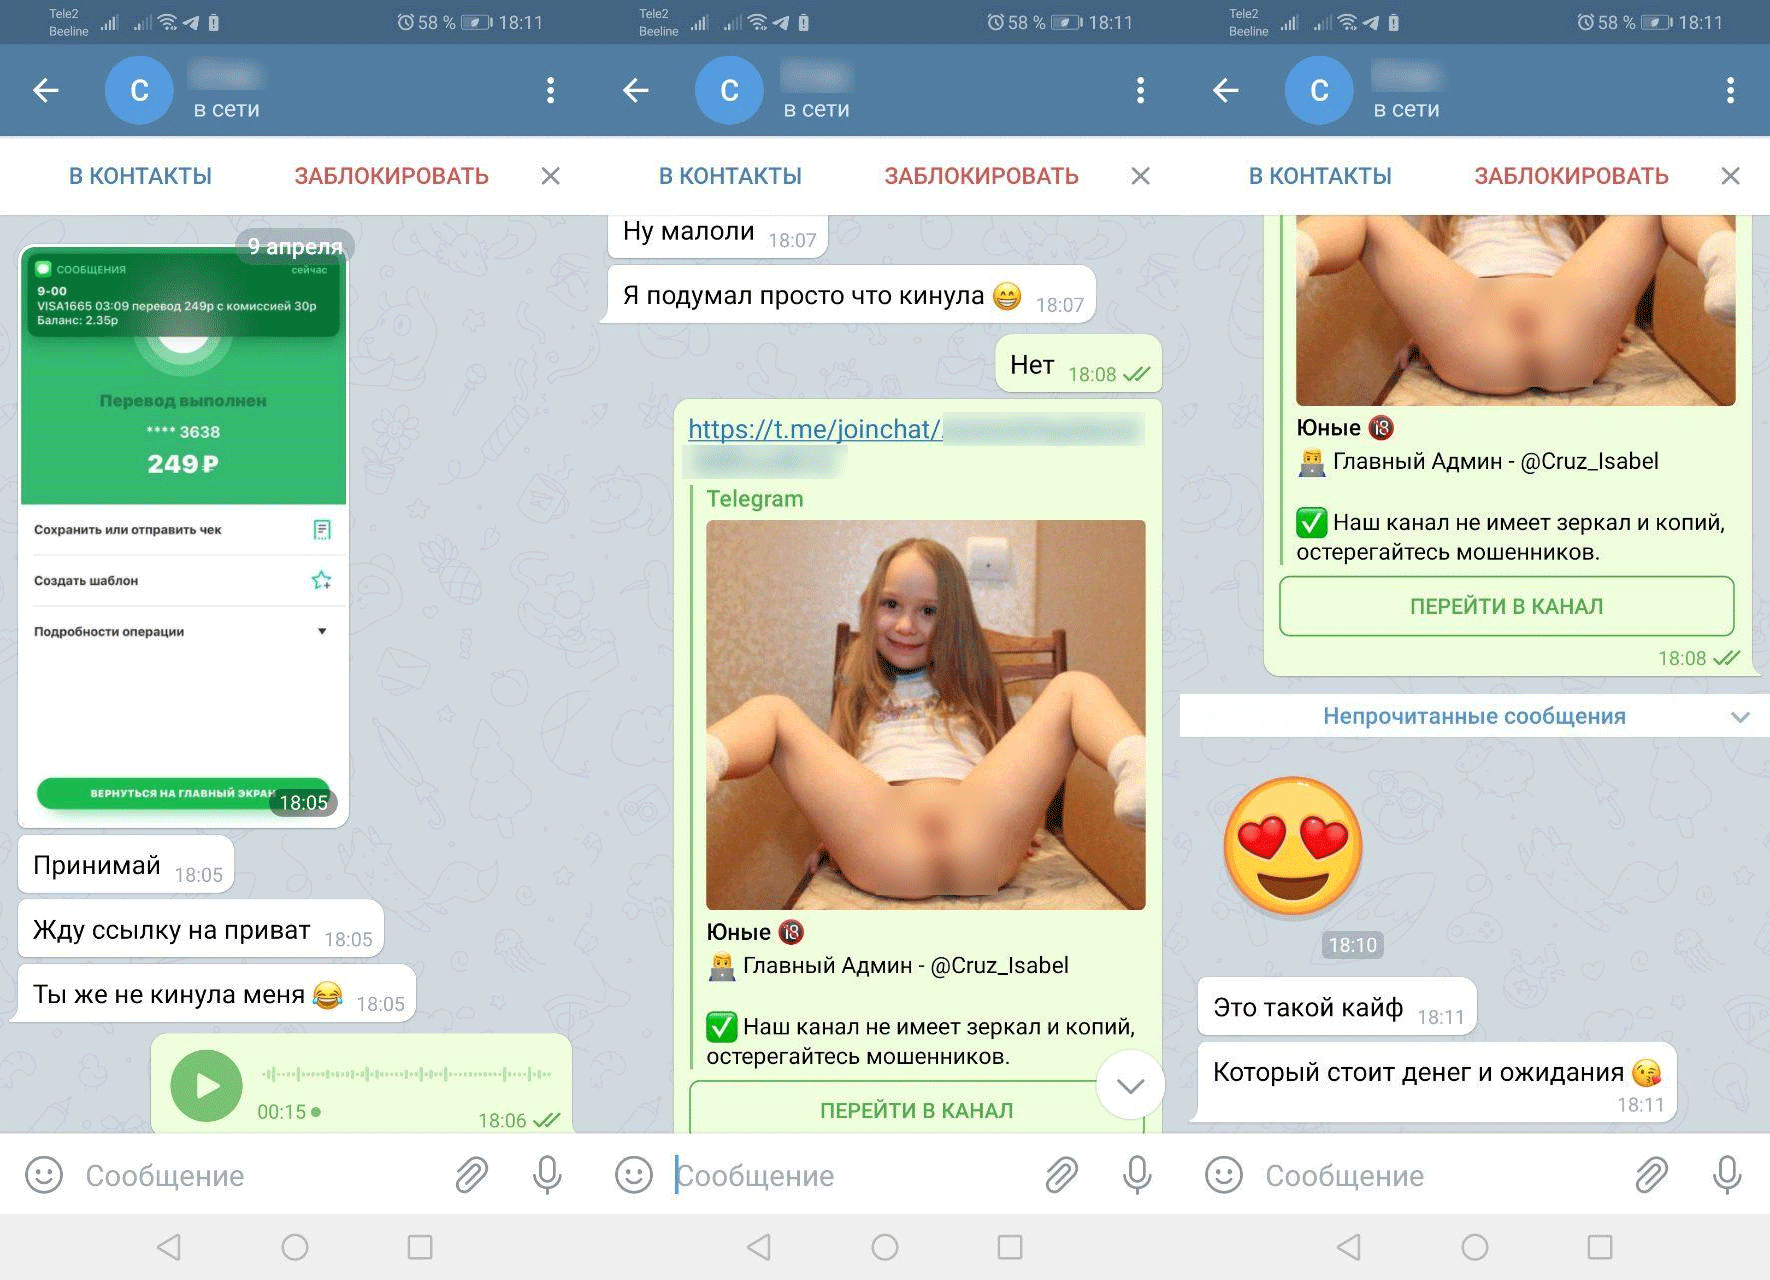 Telegram porn